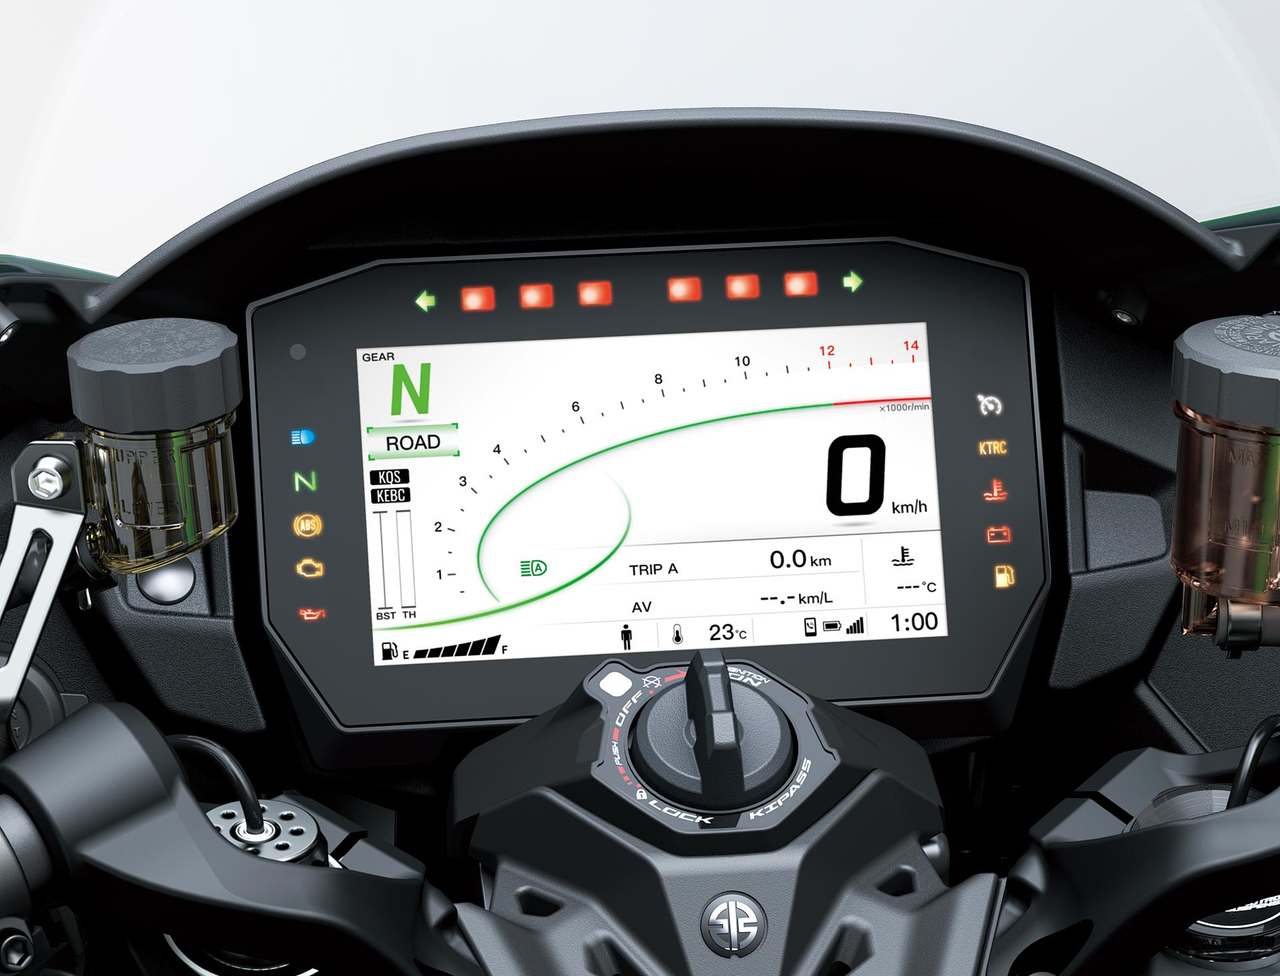 Kawasaki Rider Support Technology